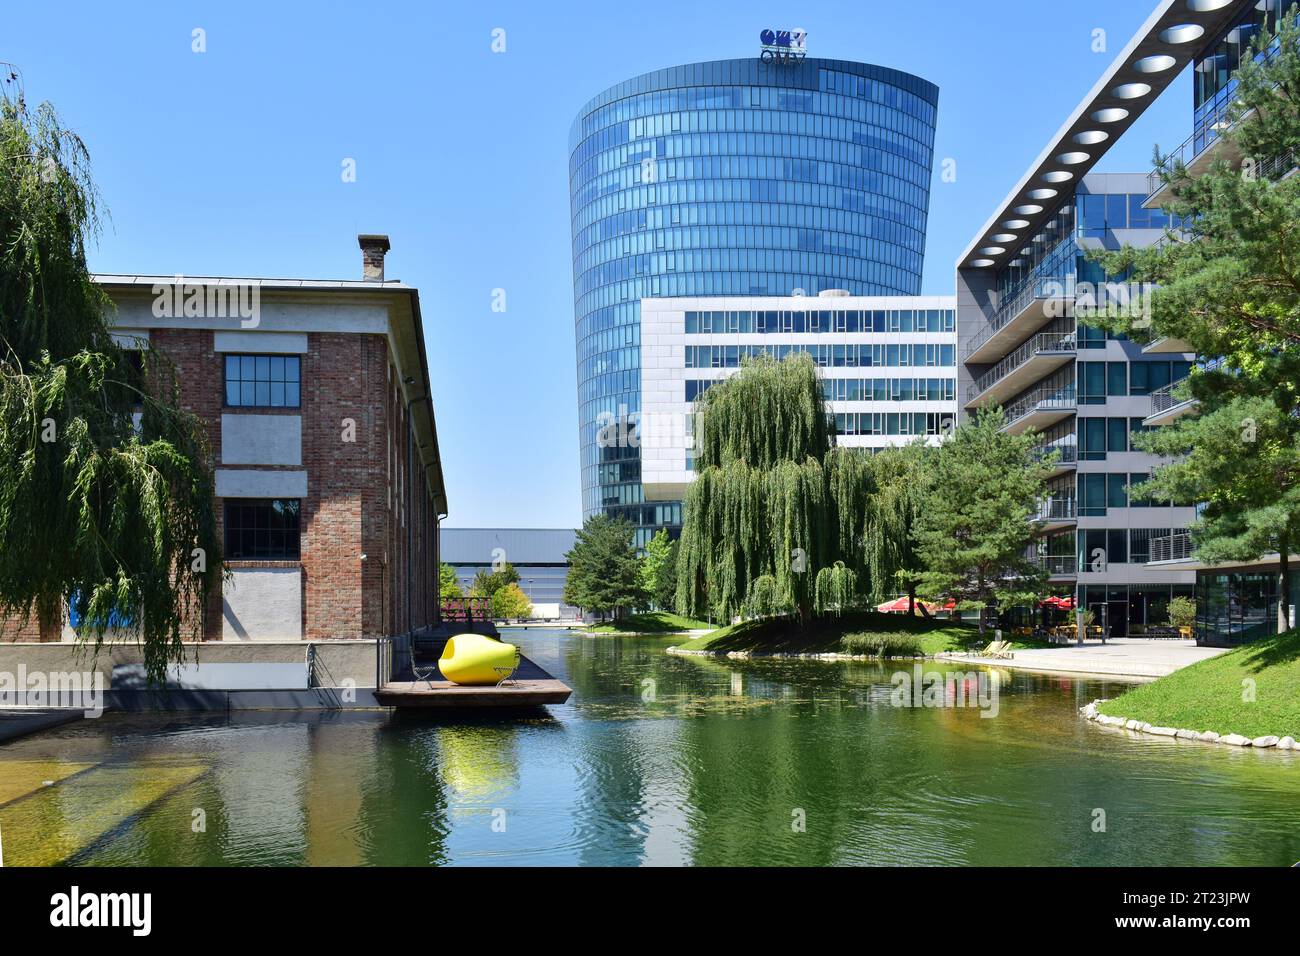 WIEN, ÖSTERREICH - 31. JULI 2020: Blick auf das Viertel zwei, ein modernes Wohn- und Geschäftsviertel in der Leopoldstadt Stockfoto